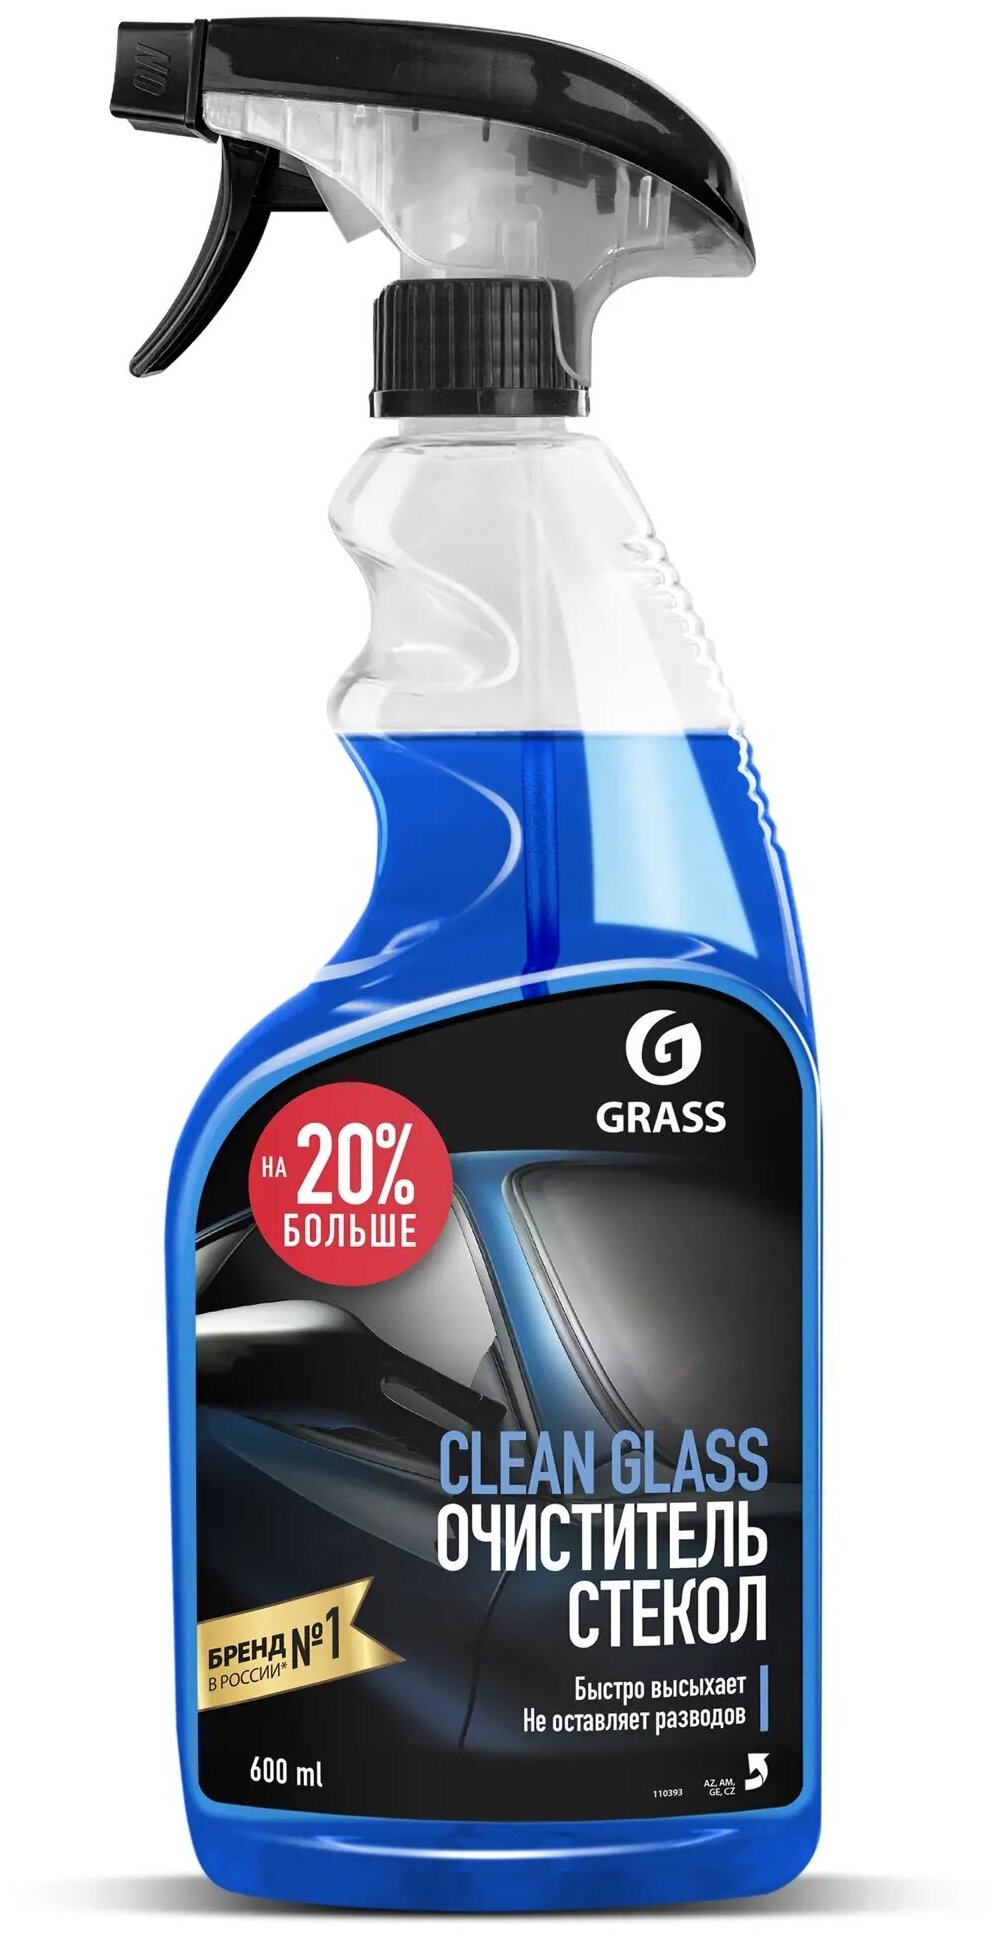 Очиститель стекол GRASS Clean glass 600мл